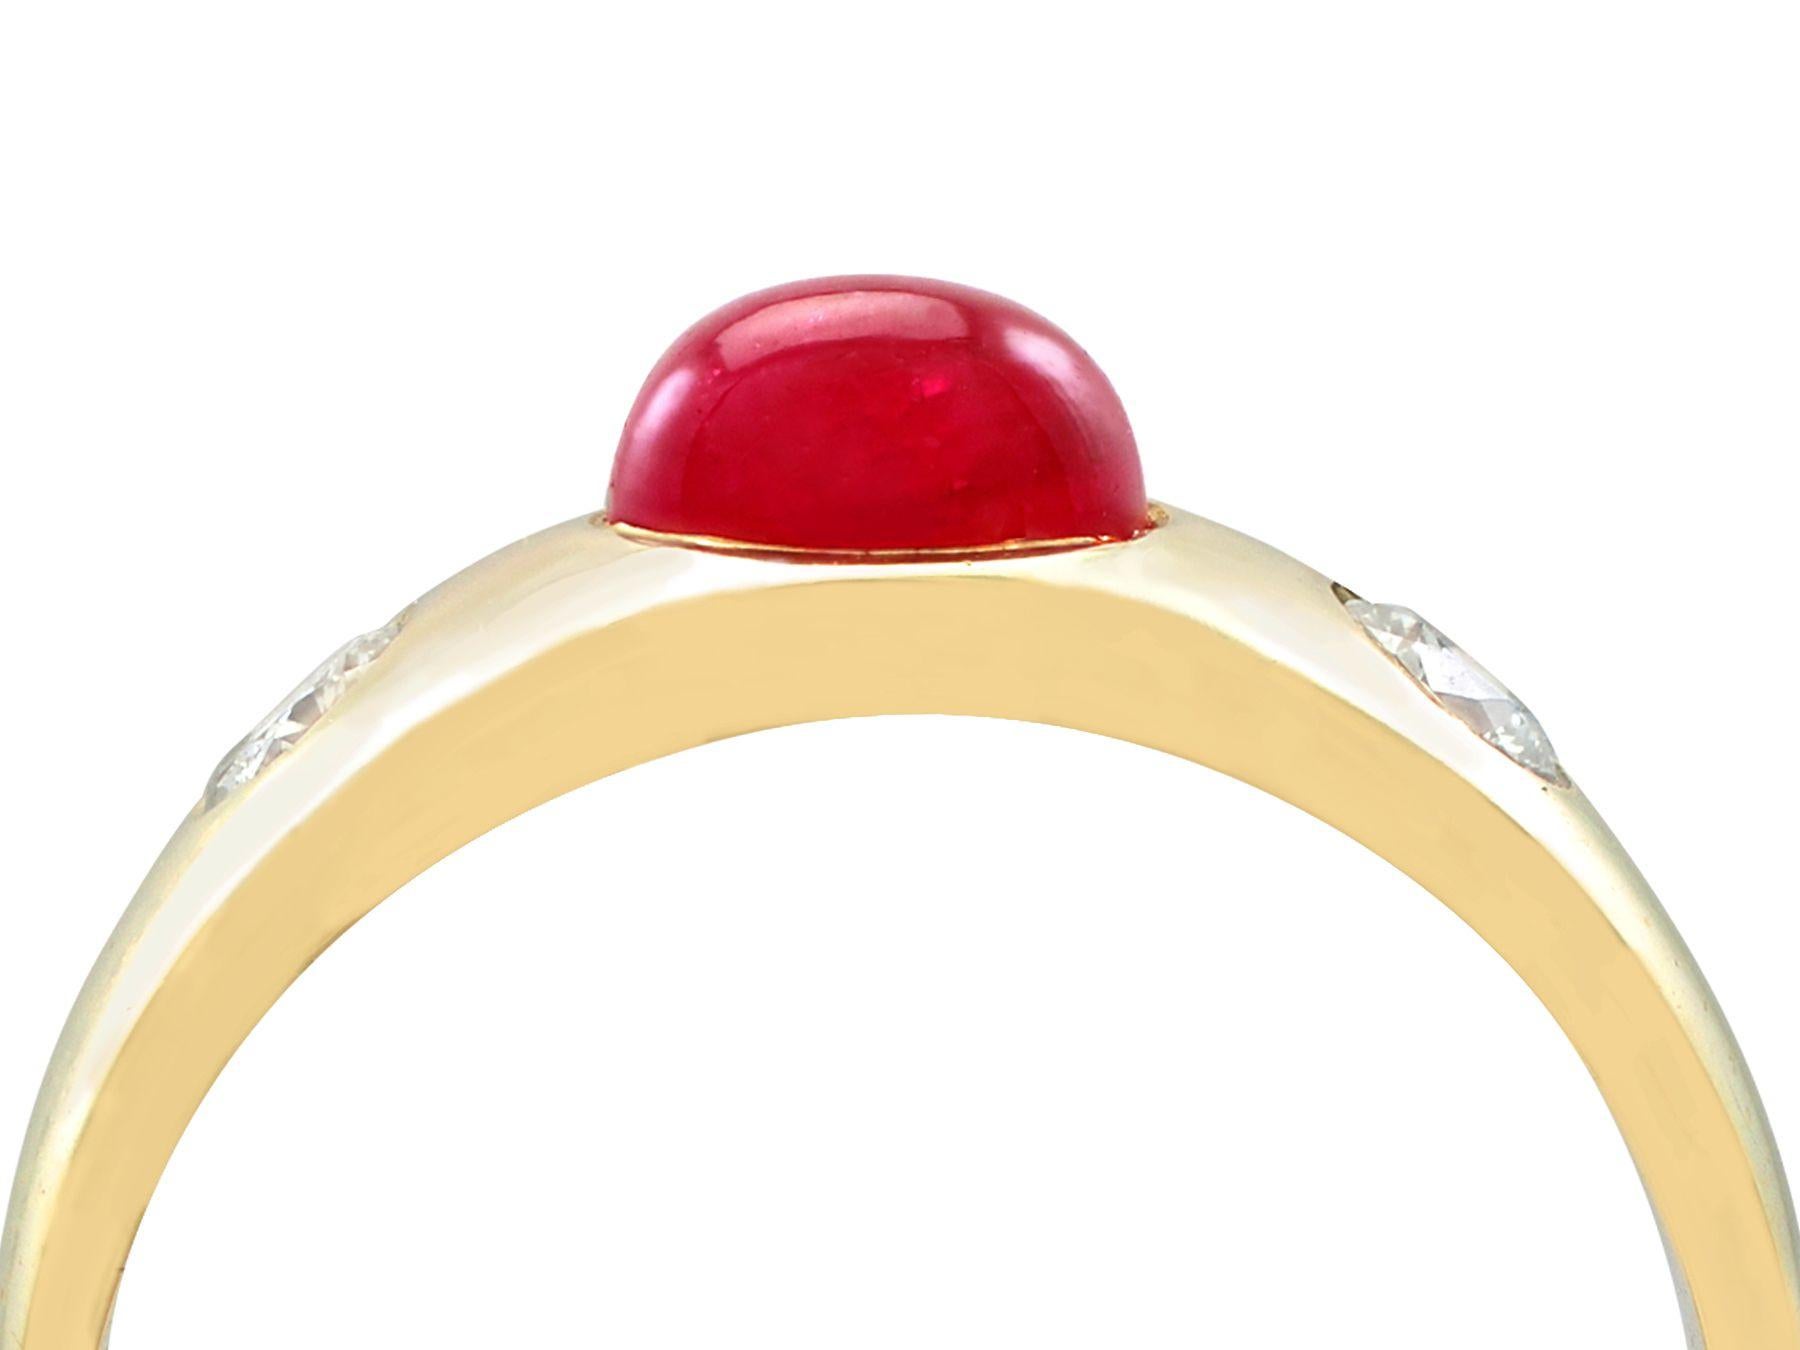 Ein beeindruckender Vintage-Ring aus den 1980er Jahren mit einem Rubin von 1,29 Karat und einem Diamanten von 0,42 Karat aus 14-karätigem Gelbgold; Teil unserer vielfältigen Vintage- und Nachlass-Schmuckkollektionen.

Dieser feine und beeindruckende